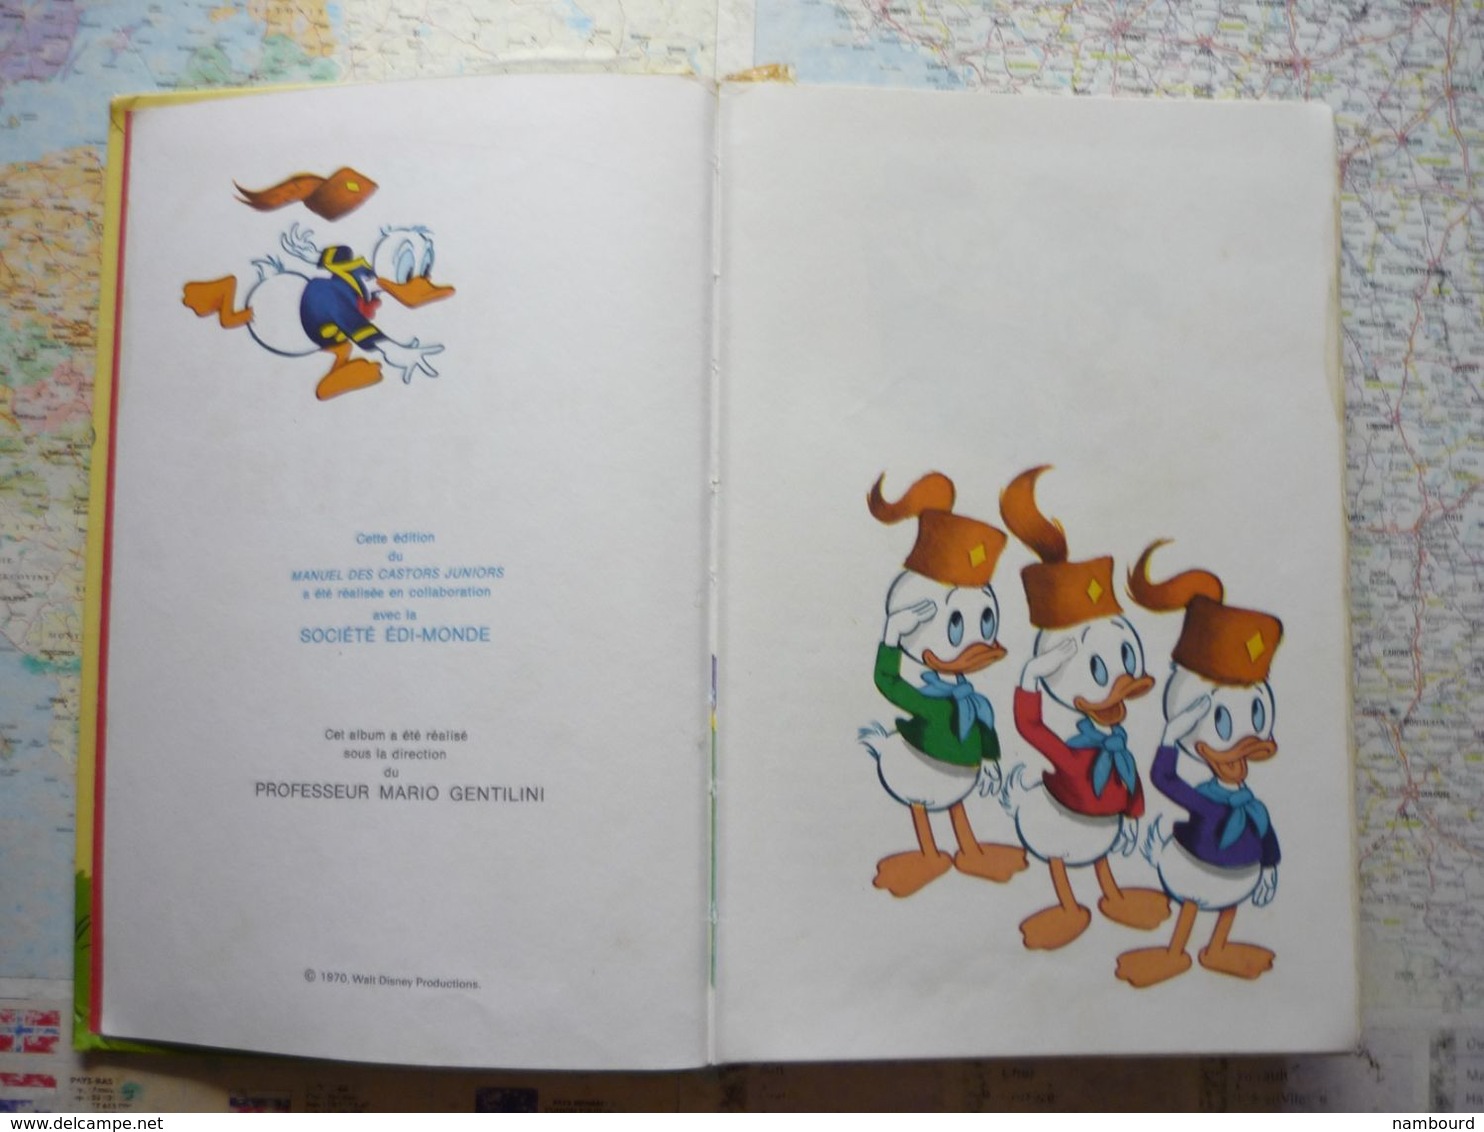 Manuel Des Castors Juniors Hachette 1970 - Disney